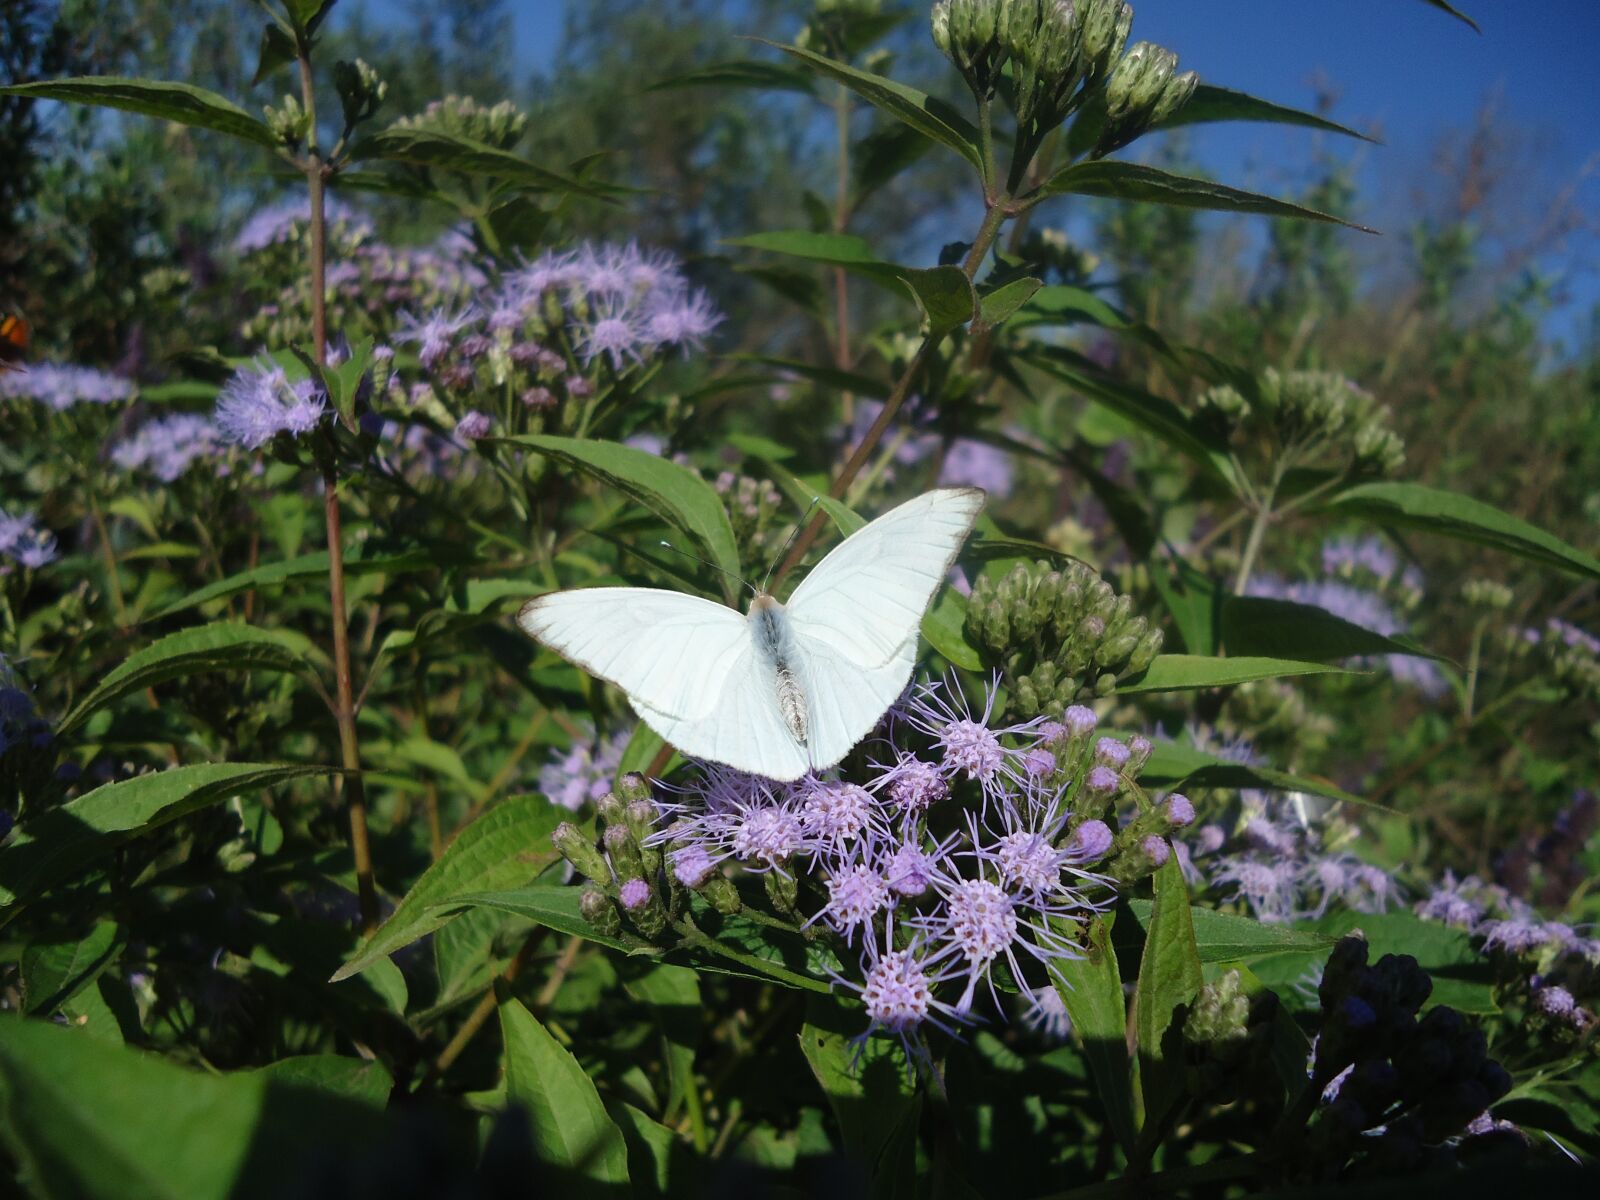 Sony Cyber-shot DSC-W610 sample photo. Butterfly, white wings, hostal photography